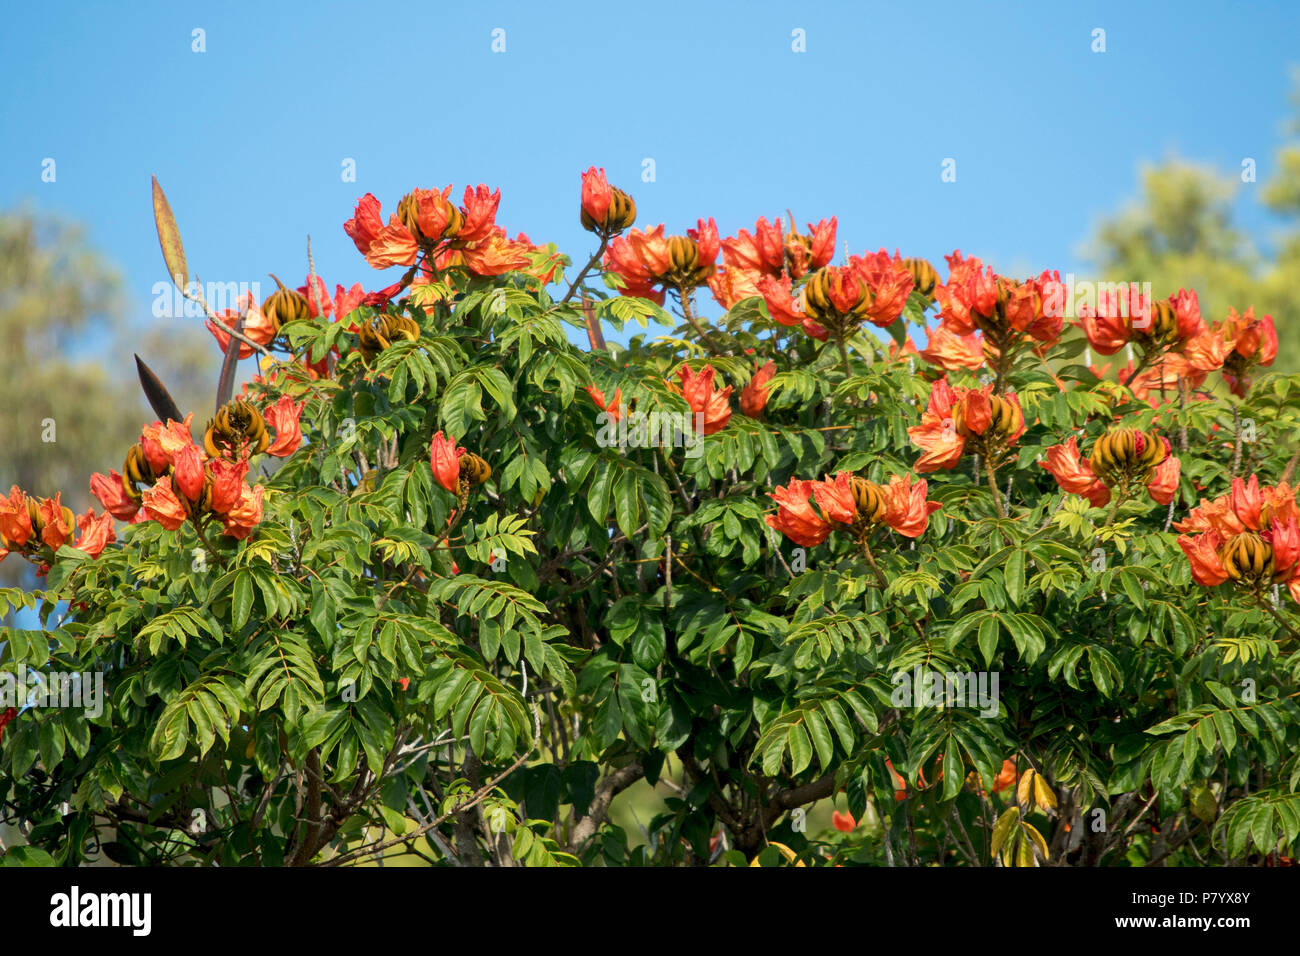 Spathodea campanulata, African Tulip Tree, avec masse des grandes fleurs orange et les coupelles de semences passant de feuillage vert dense contre le ciel bleu Banque D'Images